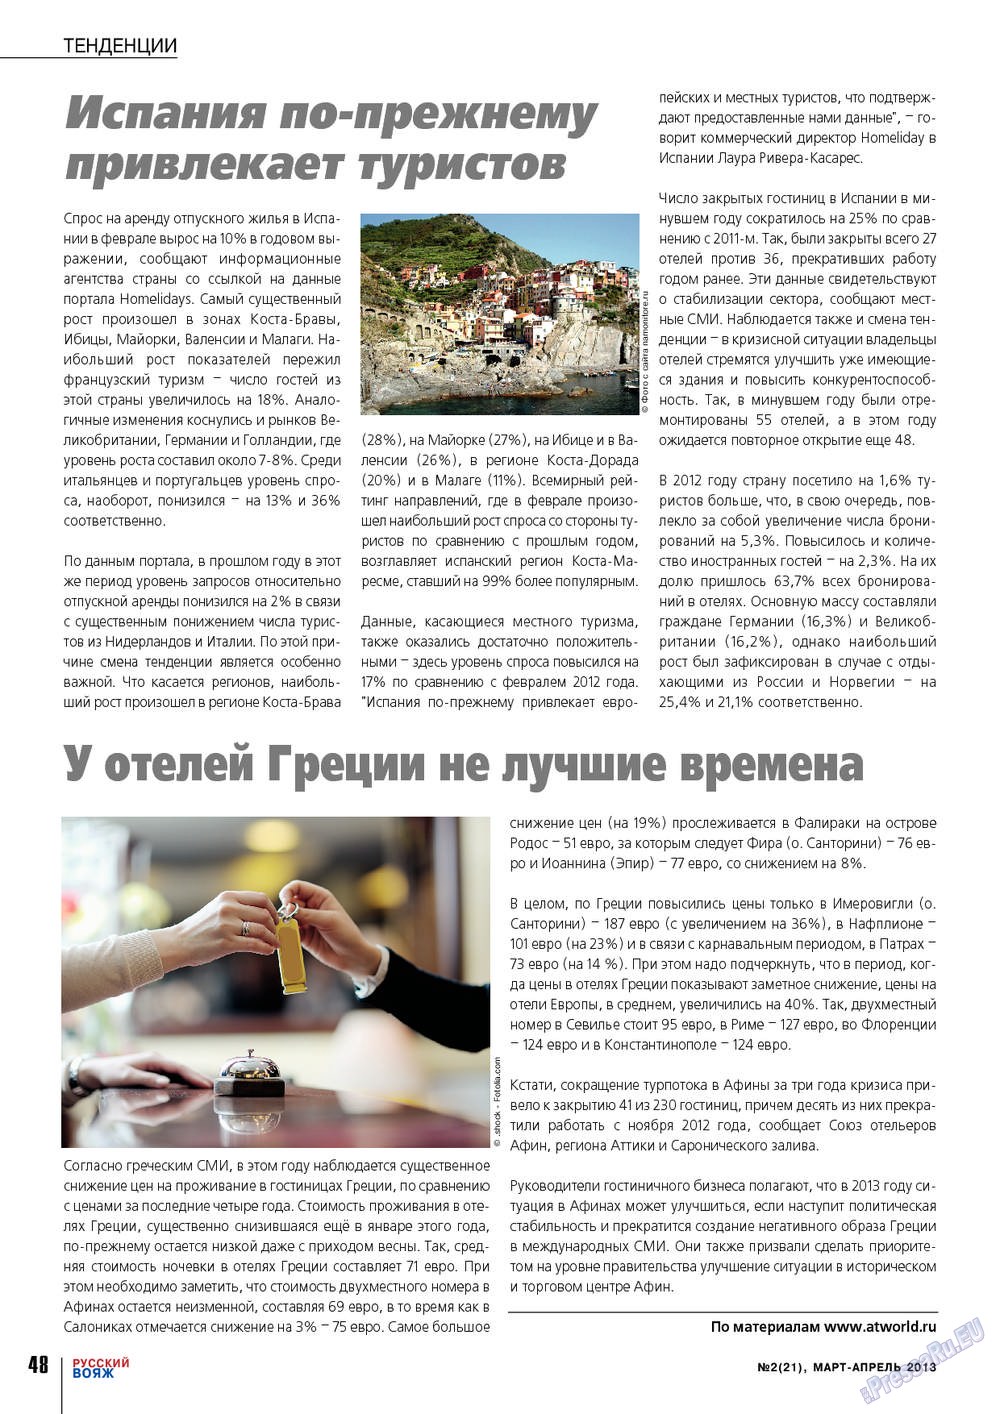 Русский вояж (журнал). 2013 год, номер 21, стр. 48